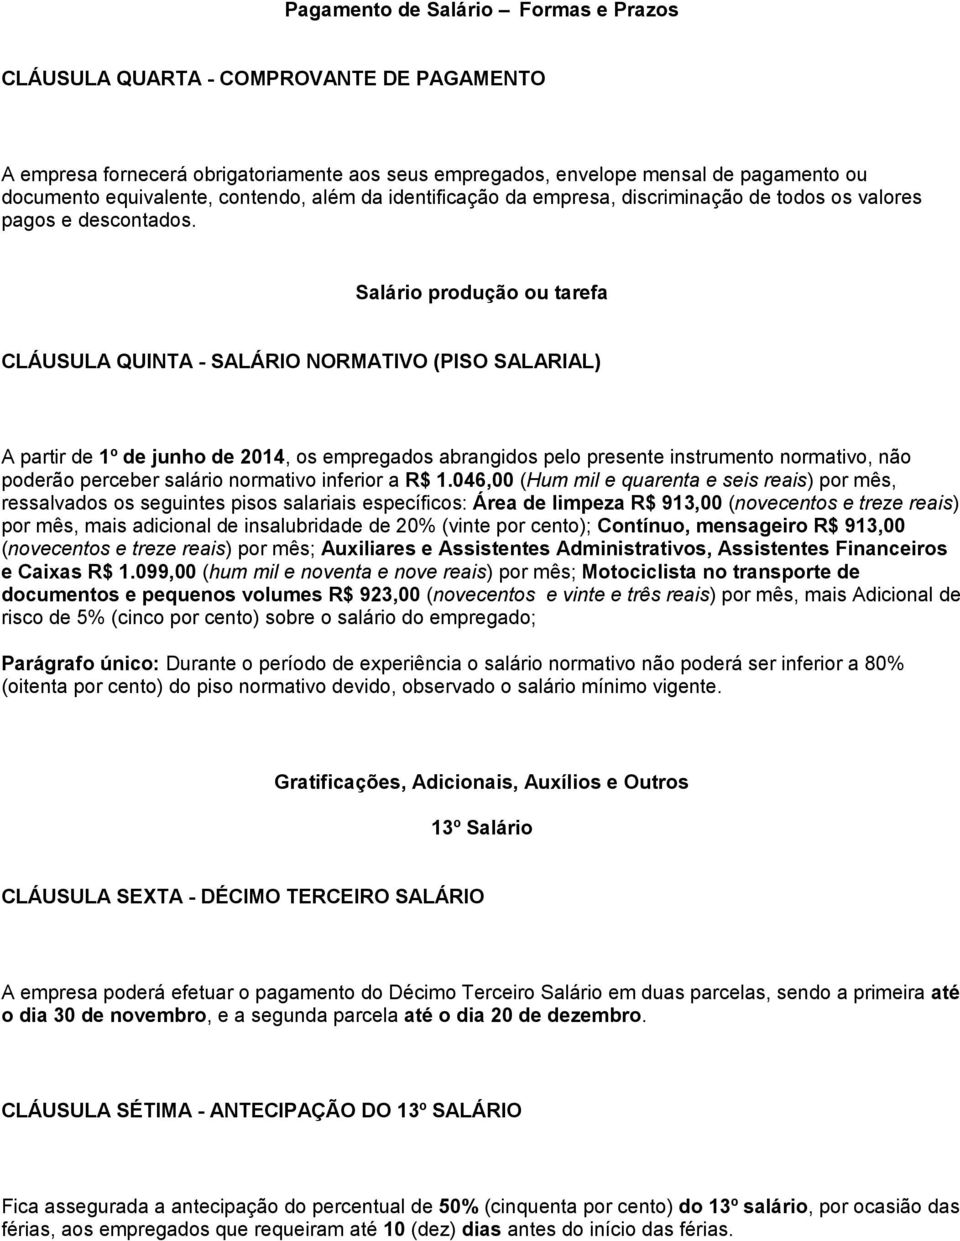 Salário produção ou tarefa CLÁUSULA QUINTA - SALÁRIO NORMATIVO (PISO SALARIAL) A partir de 1º de junho de 2014, os empregados abrangidos pelo presente instrumento normativo, não poderão perceber